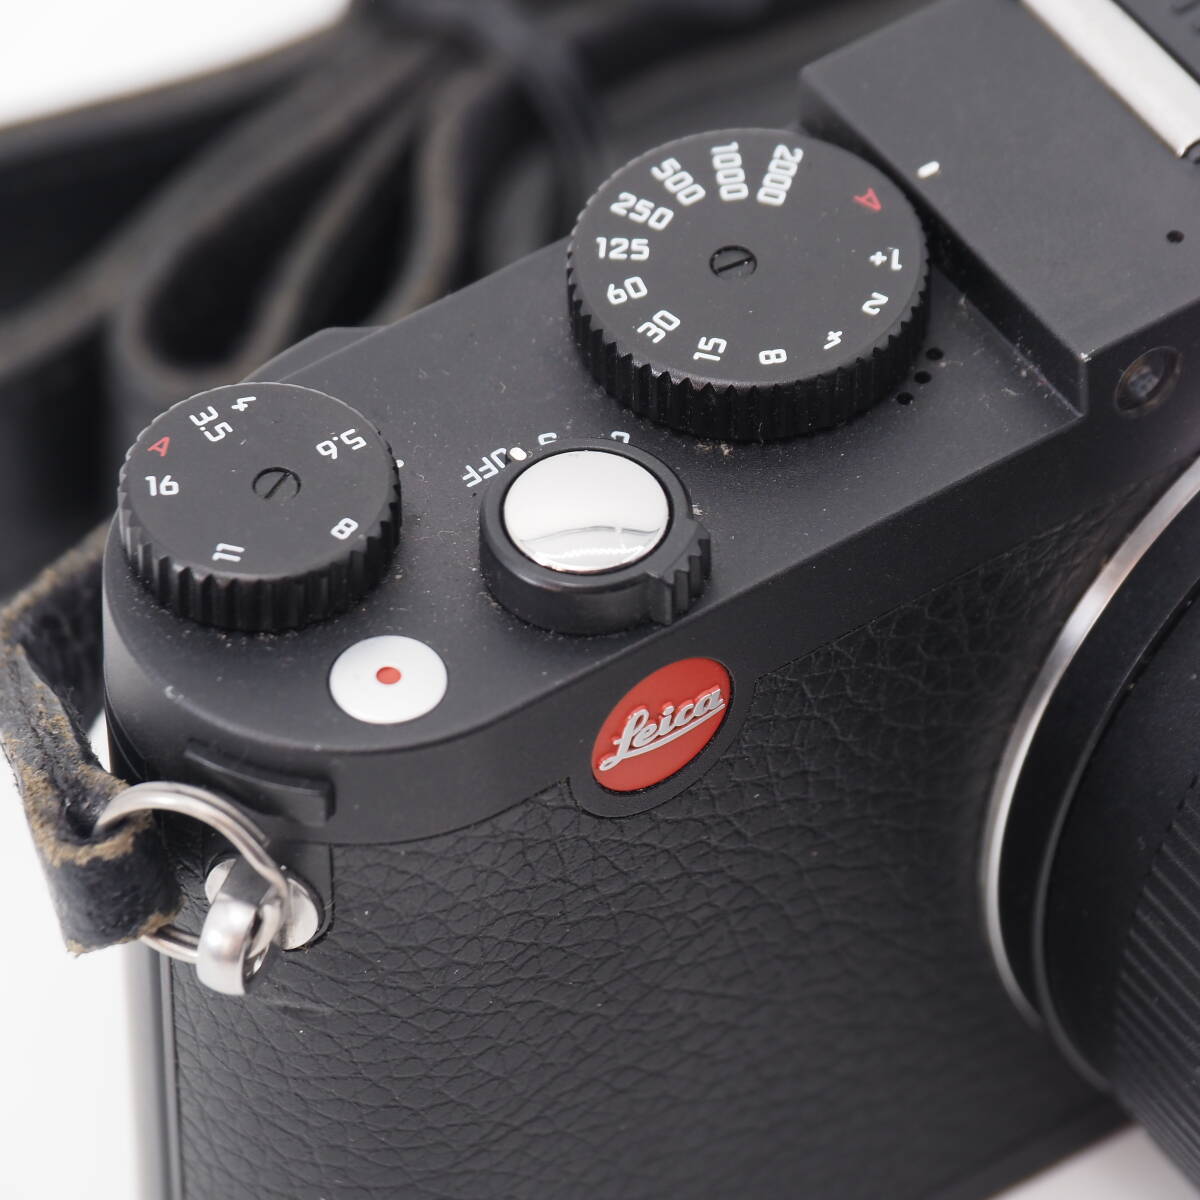 102066* первоклассный товар *Leica цифровая камера Leica X шероховатость oTyp 107 1620 десять тысяч пикселей оптика 2.5 кратный zoom черный 18430